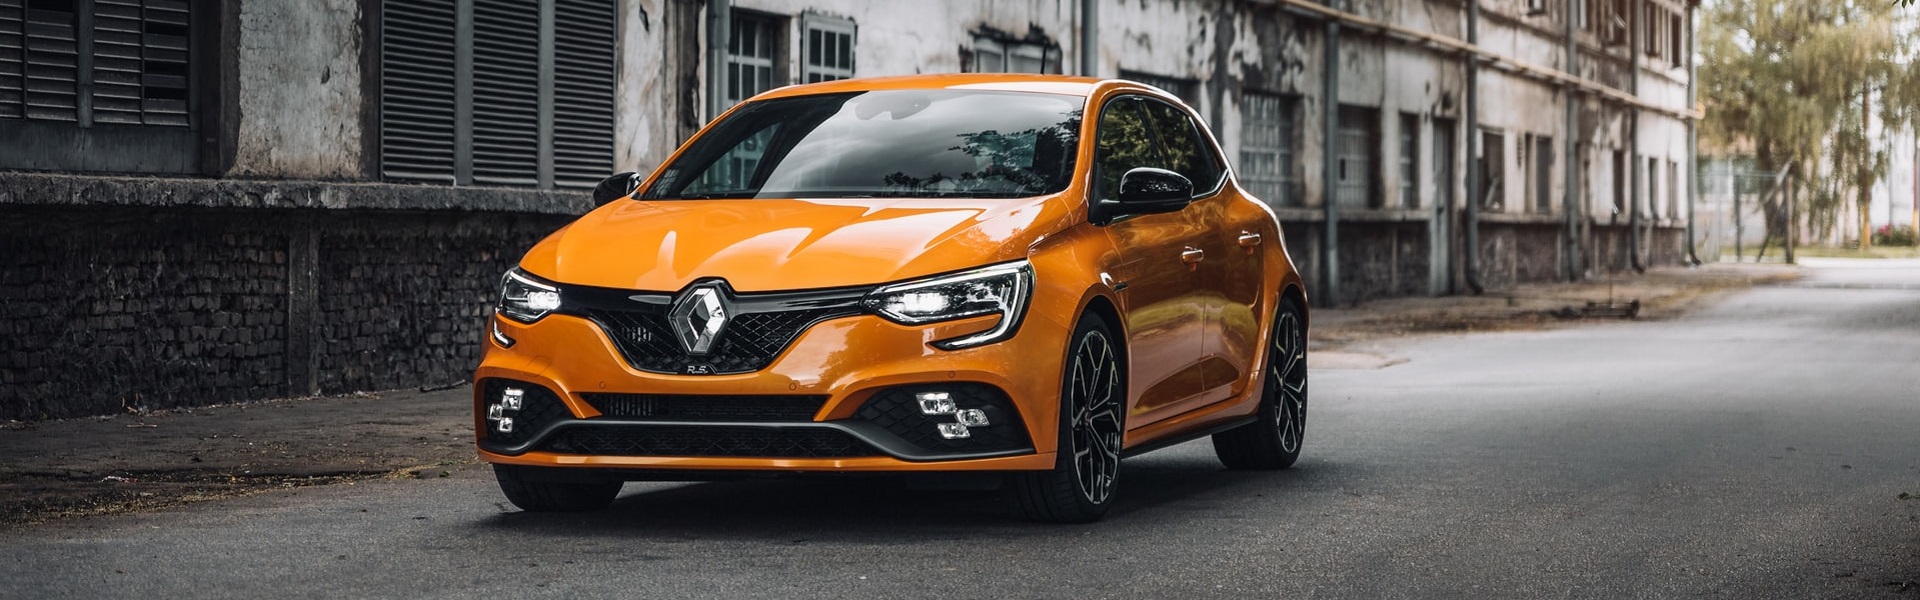 Rent a car Beograd | Renault delovi